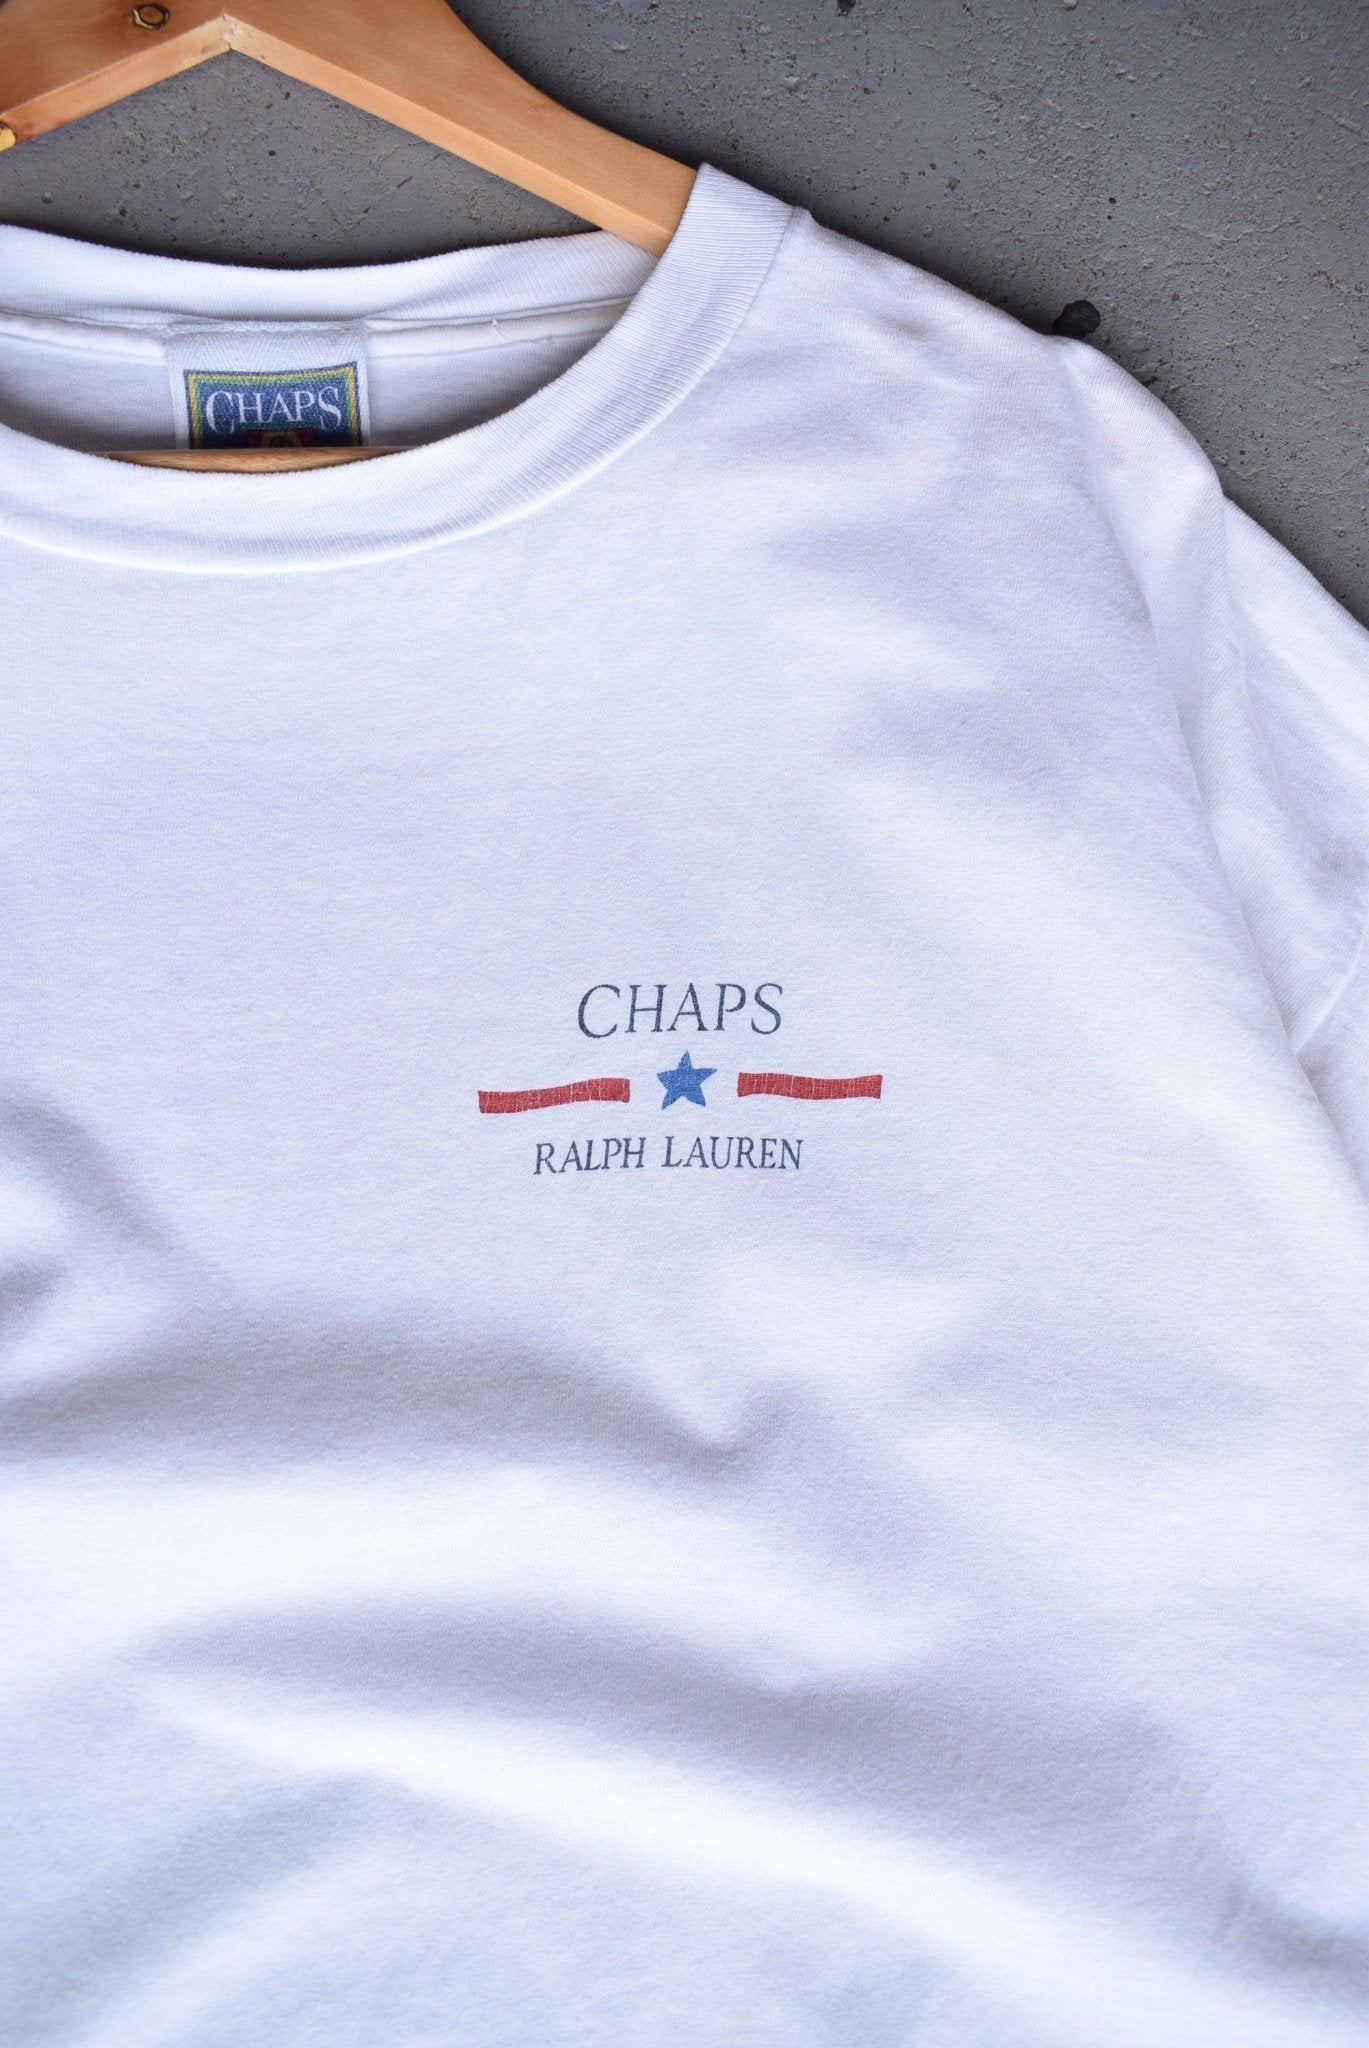 Vintage 90s Chaps Ralph Lauren Tee (XL) - Retrospective Store